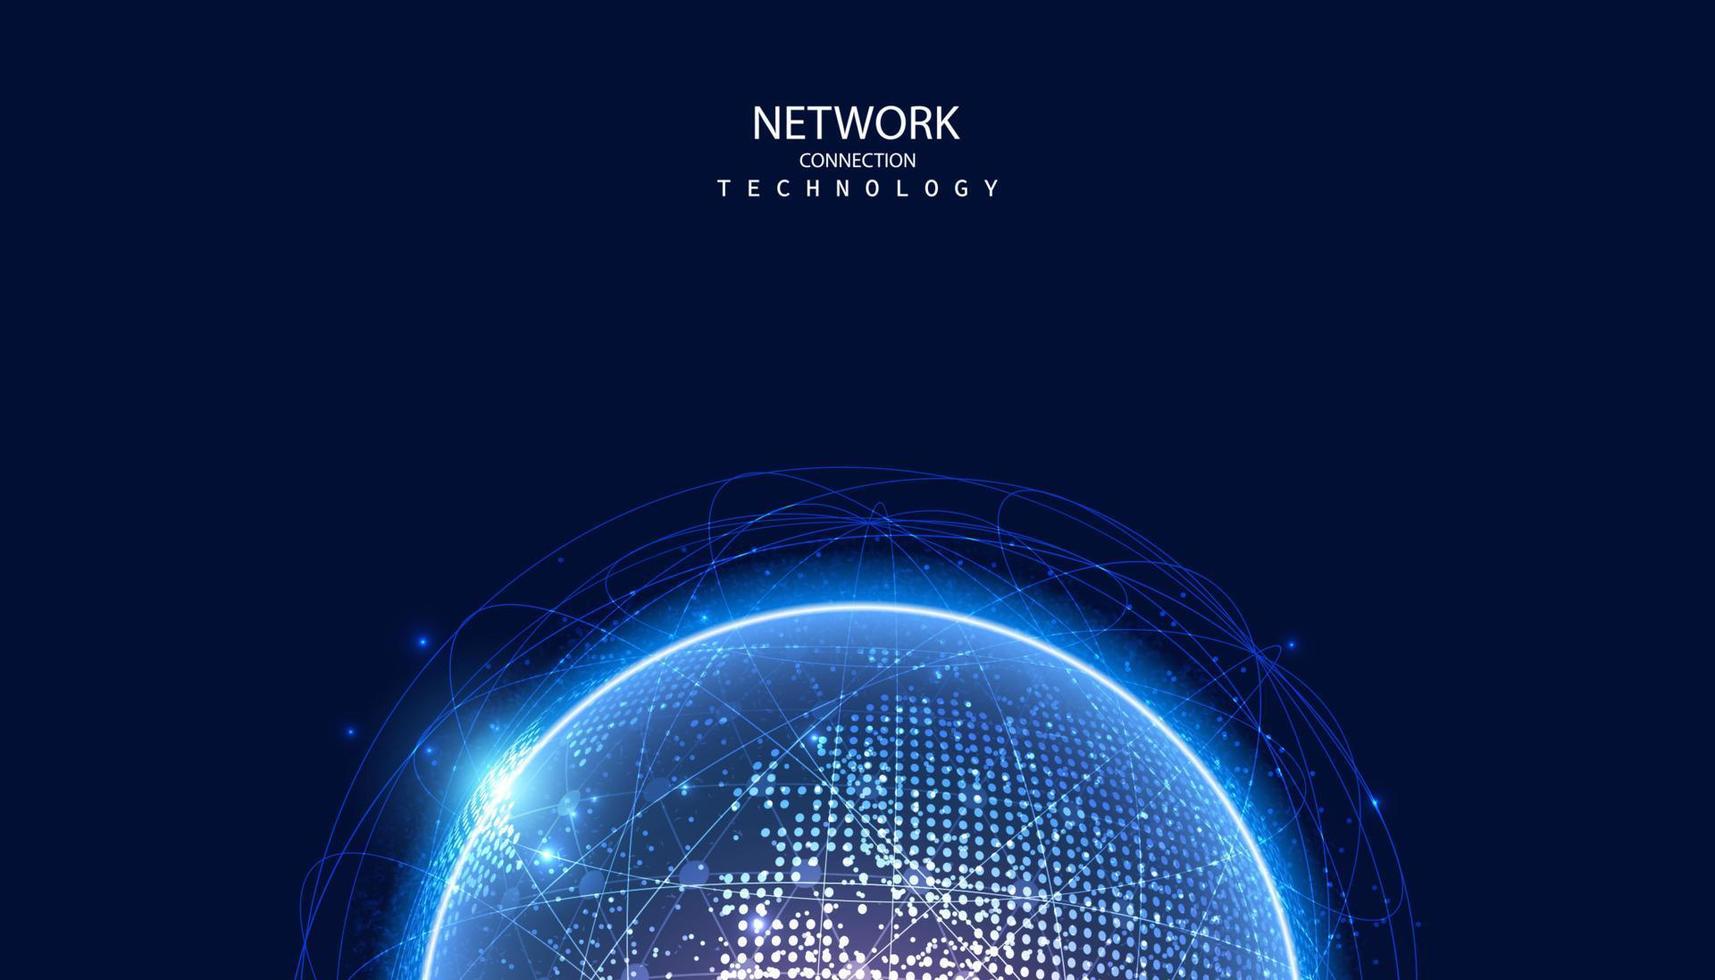 réseau de points global abstrait cercle connexion numérique et communication futuriste sur fond bleu. vecteur